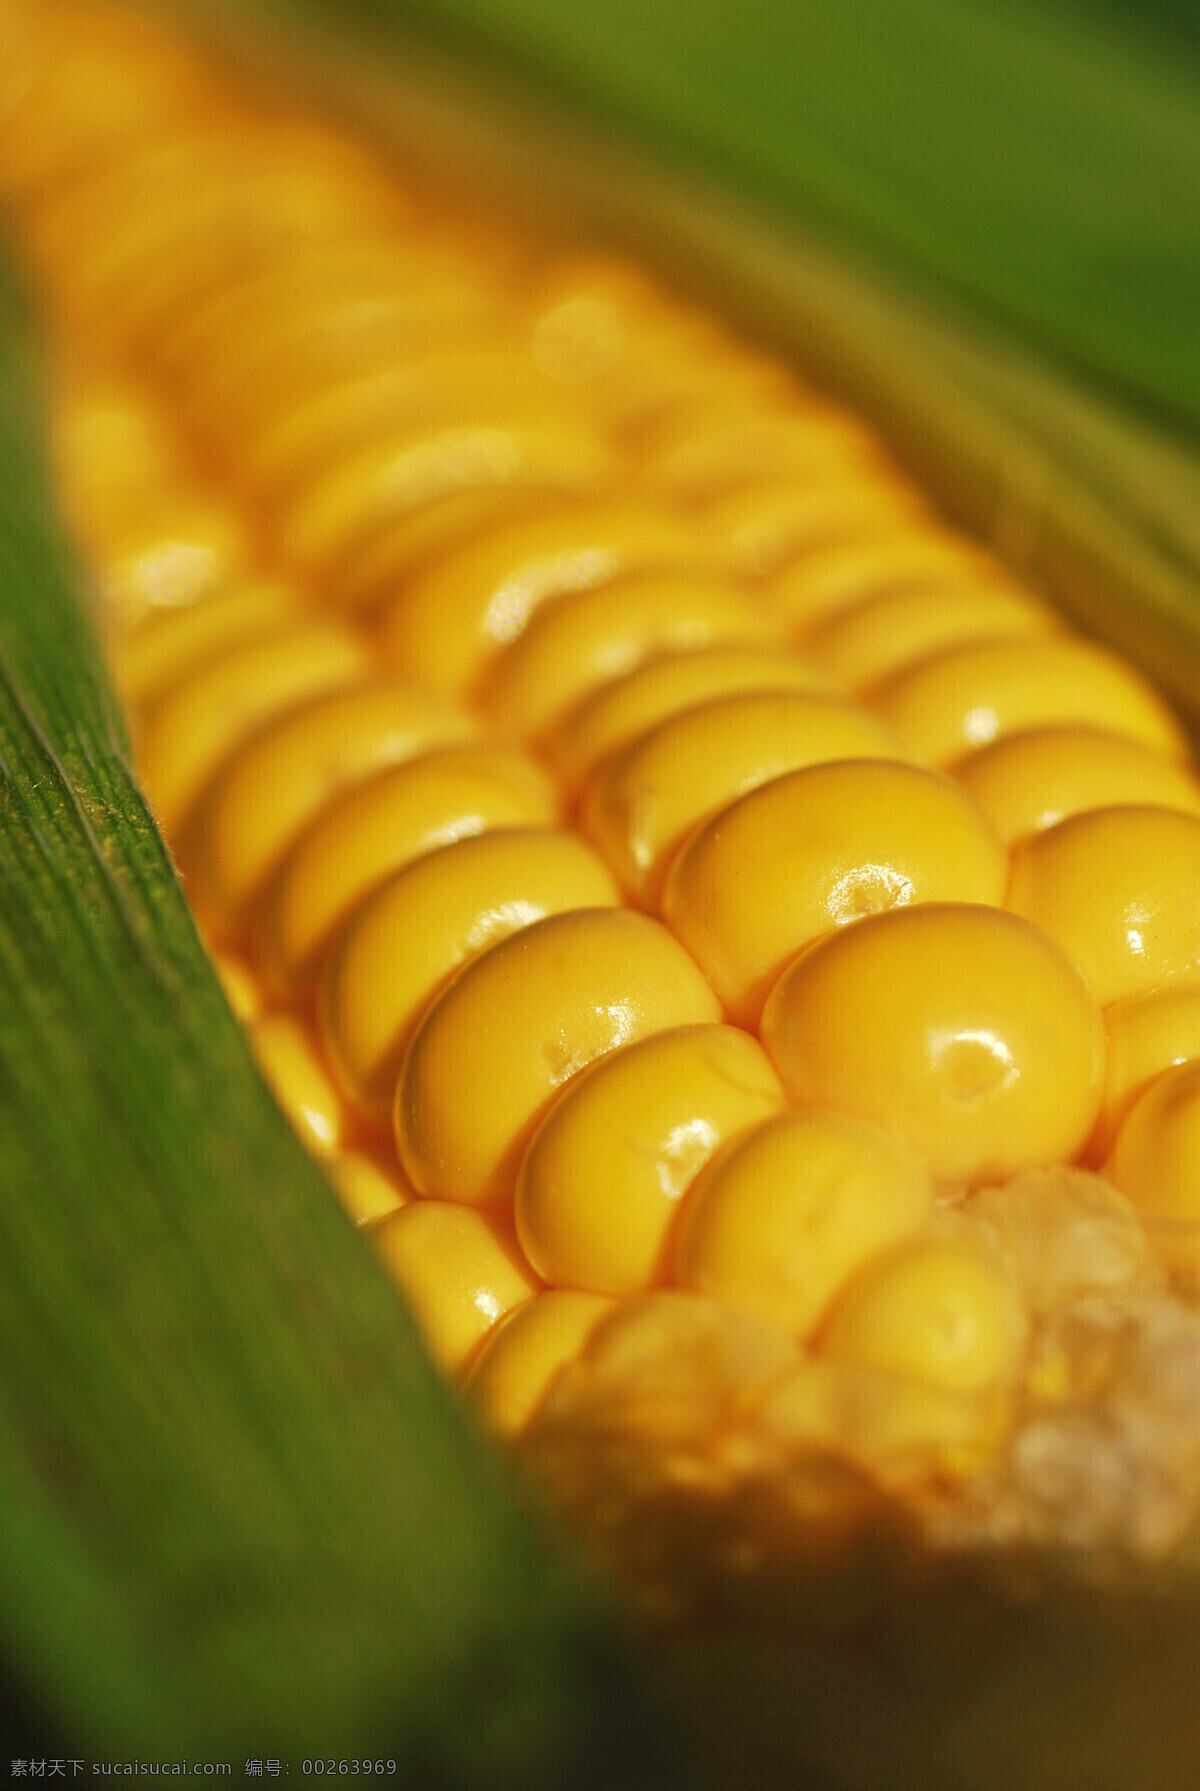 玉米 皮包裹 下 金色 金色玉米 玉米皮 粮食 农作物 农产品 原材料 特写 玉米棒 玉米穗 成熟 果实 农业生产 现代科技